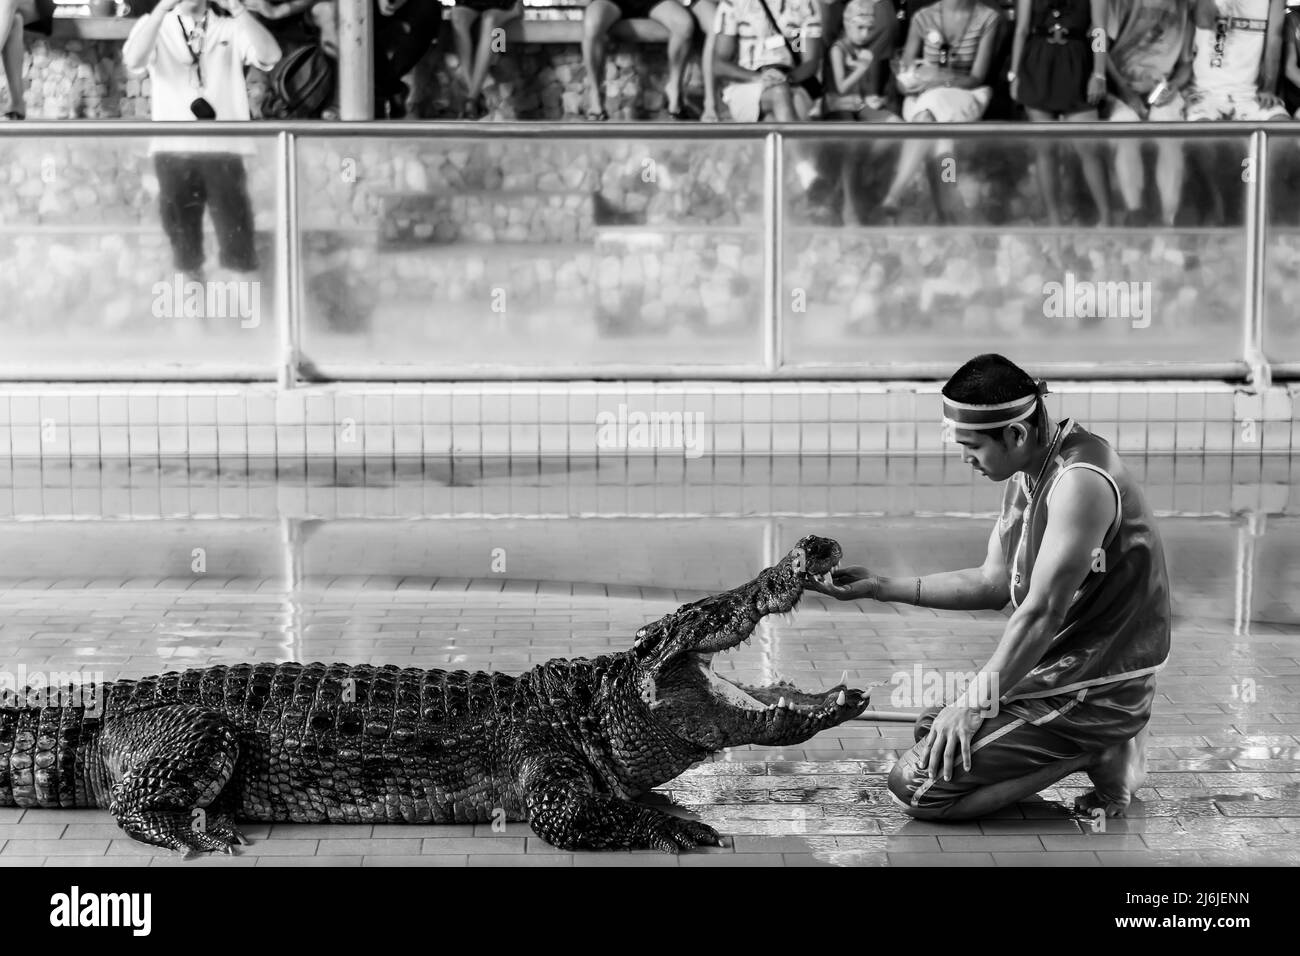 Pattaya, Thailandia - 7 dicembre 2009: Mostra di allevamento di coccodrilli di Pattaya. L'esecutore mette la sua mano nella bocca del coccodrillo. Fotografia in bianco e nero Foto Stock